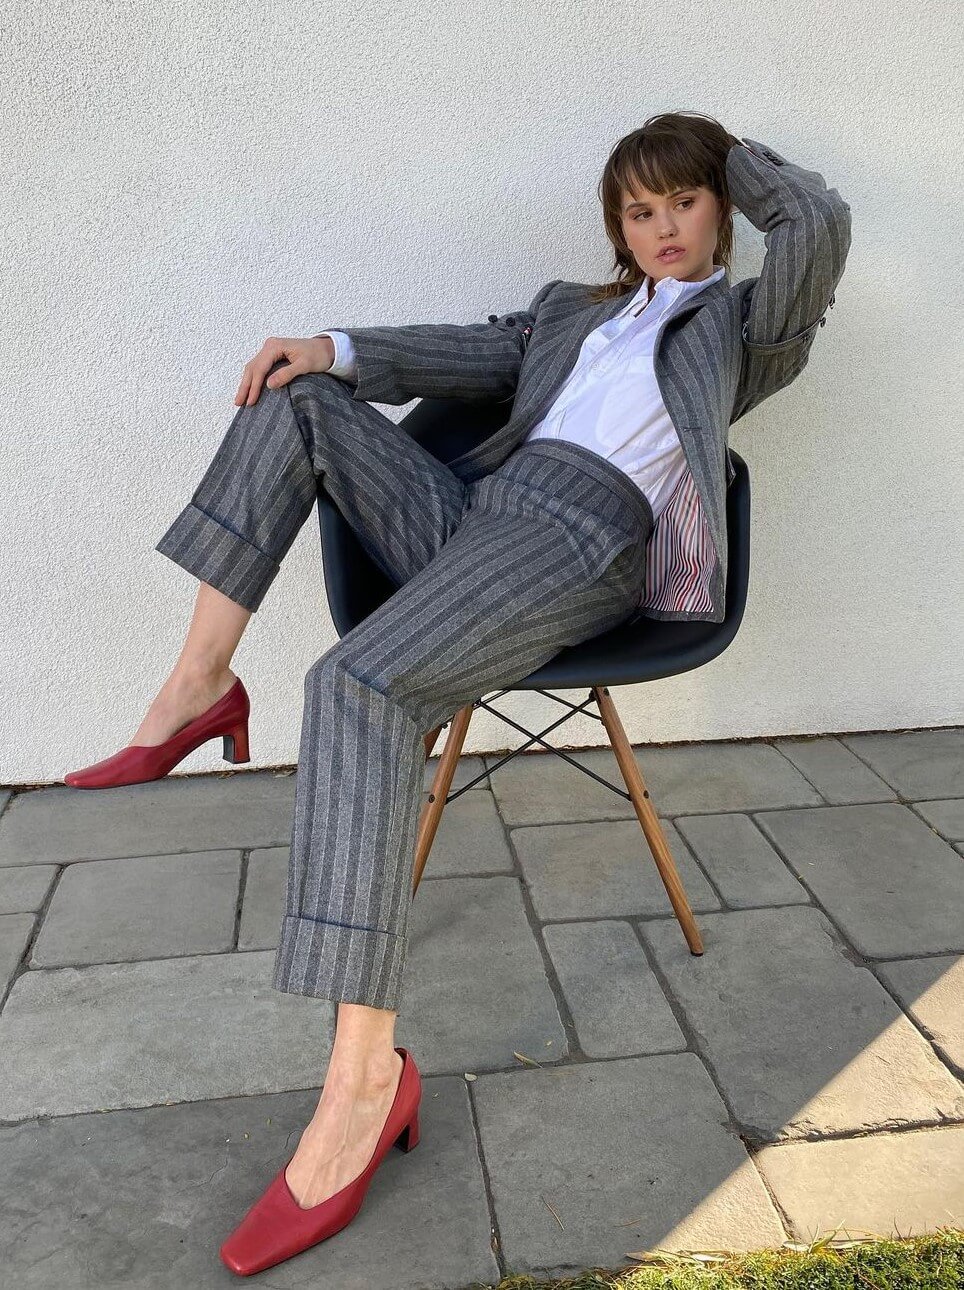 Debby Ryan Redefined Elegance In A Grey Pantsuit